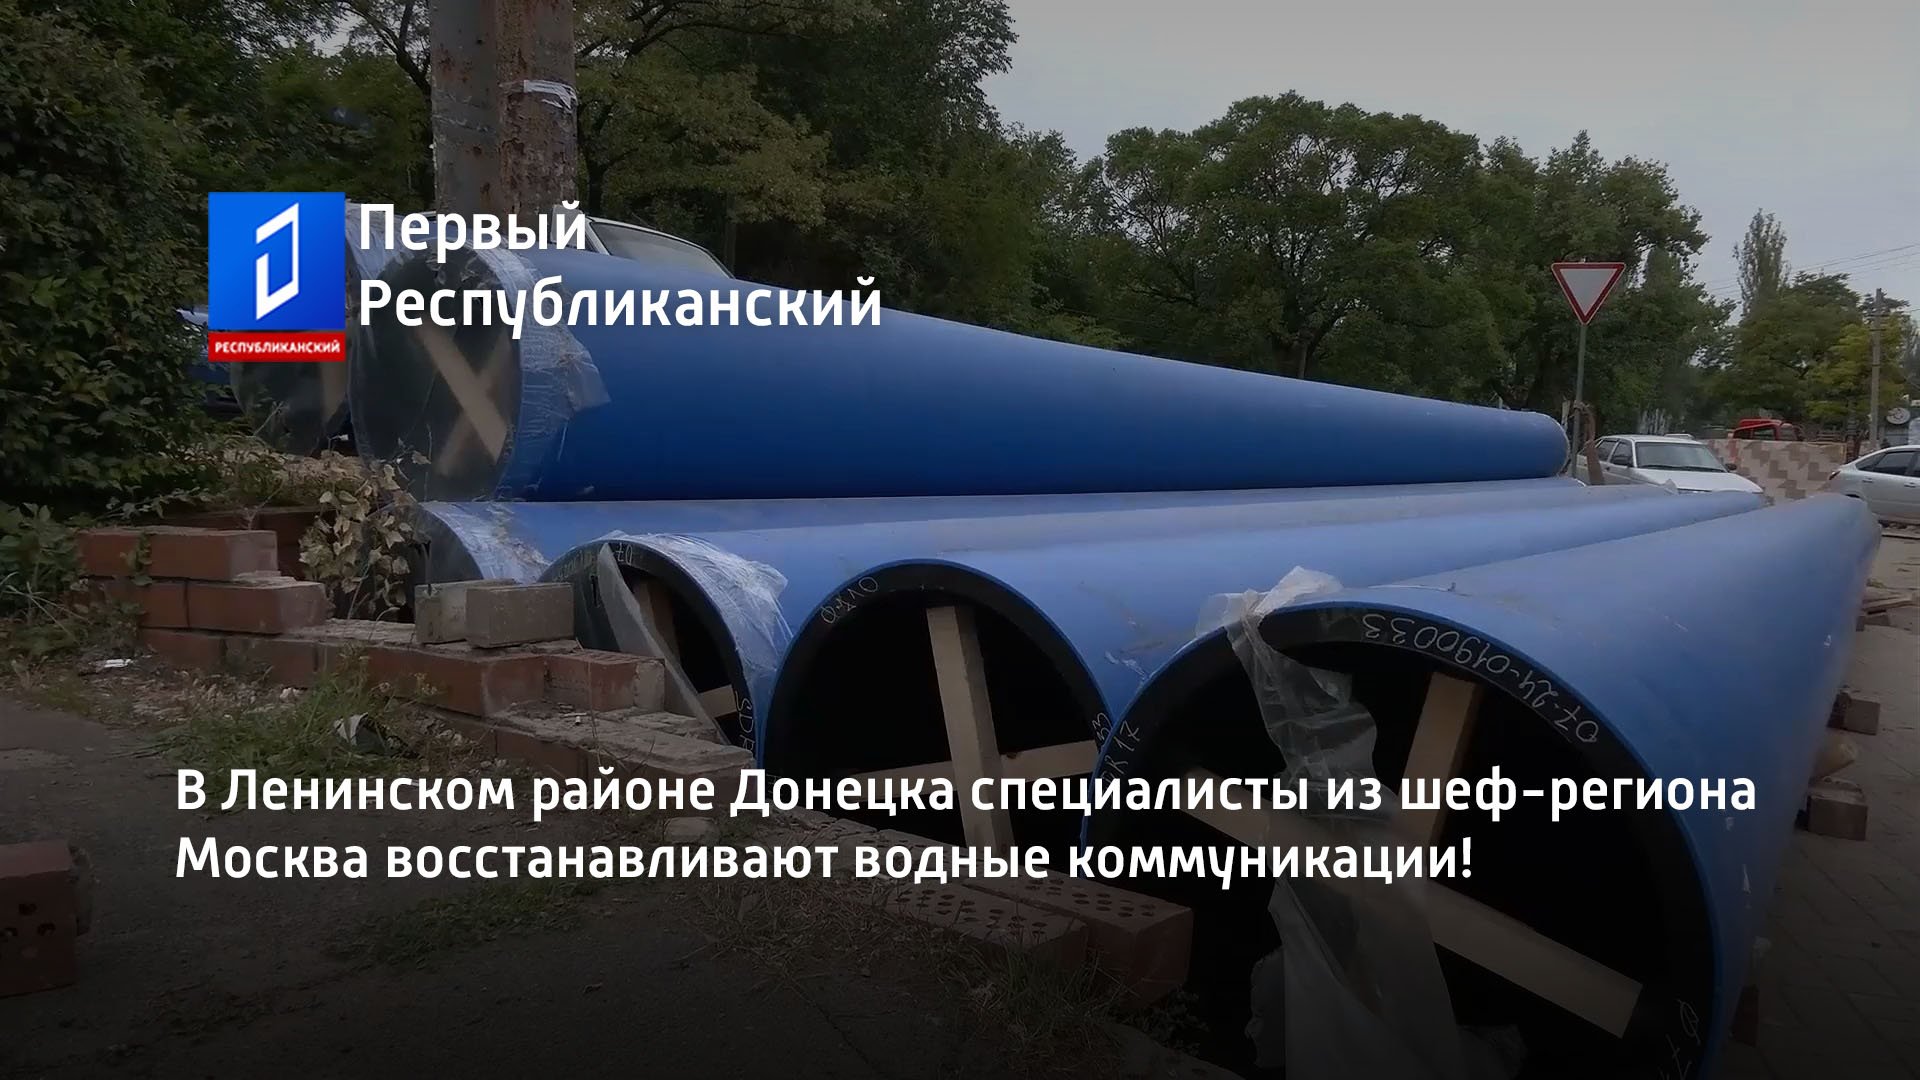 В Ленинском районе Донецка специалисты из шеф-региона Москва восстанавливают водные коммуникации!